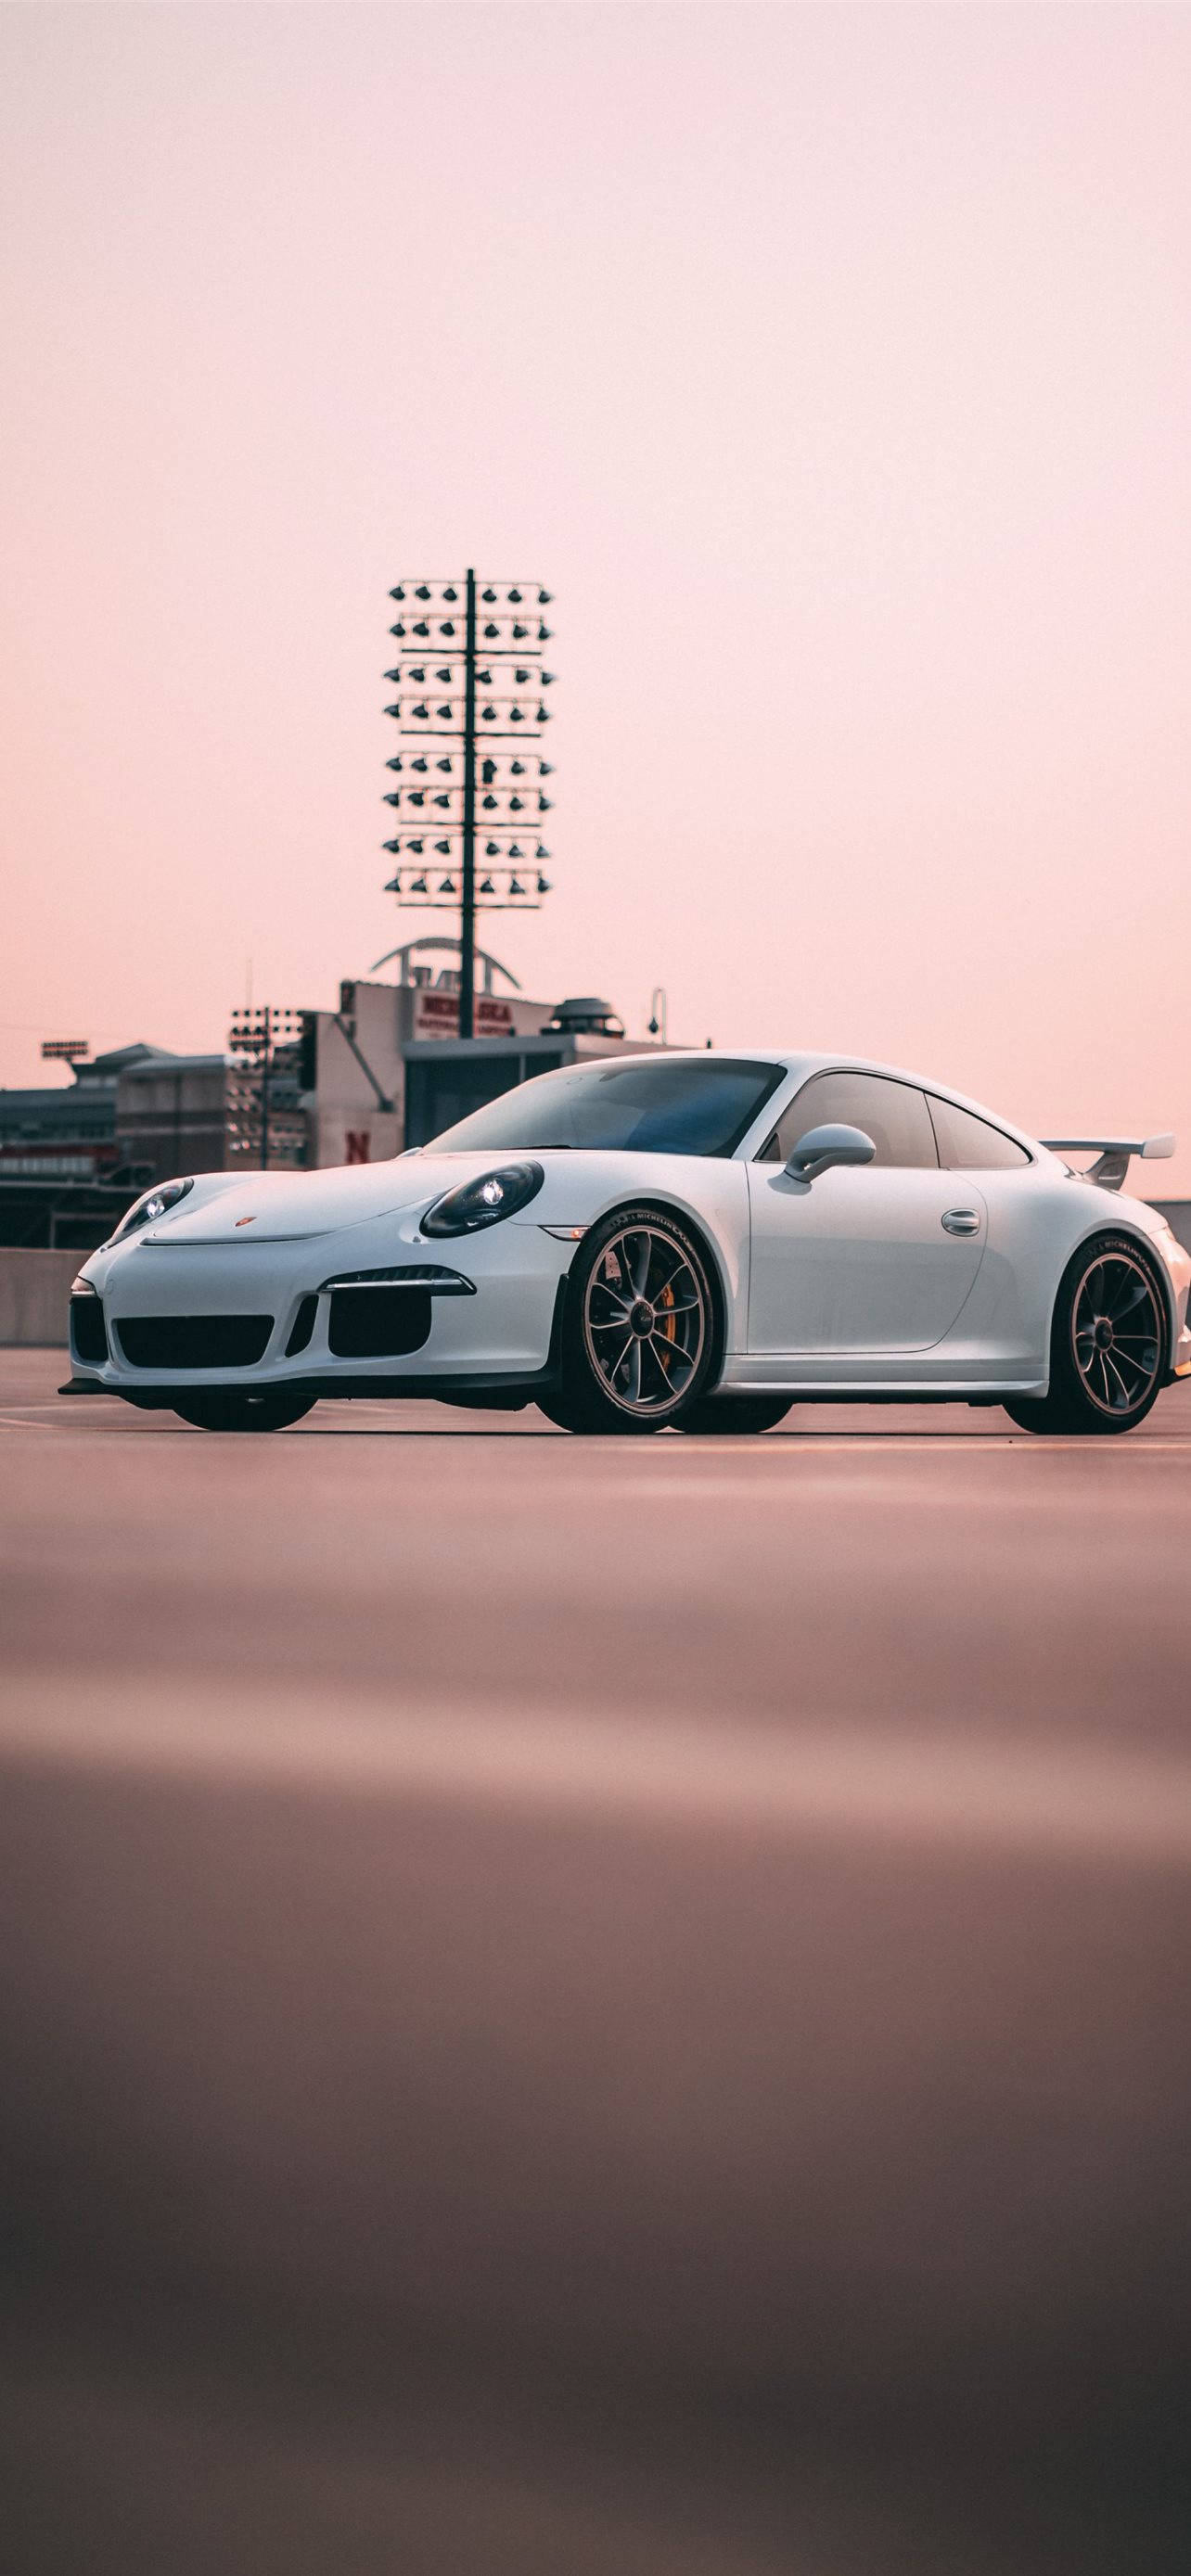 White Porsche 911 In Outdoor Parking Wallpaper